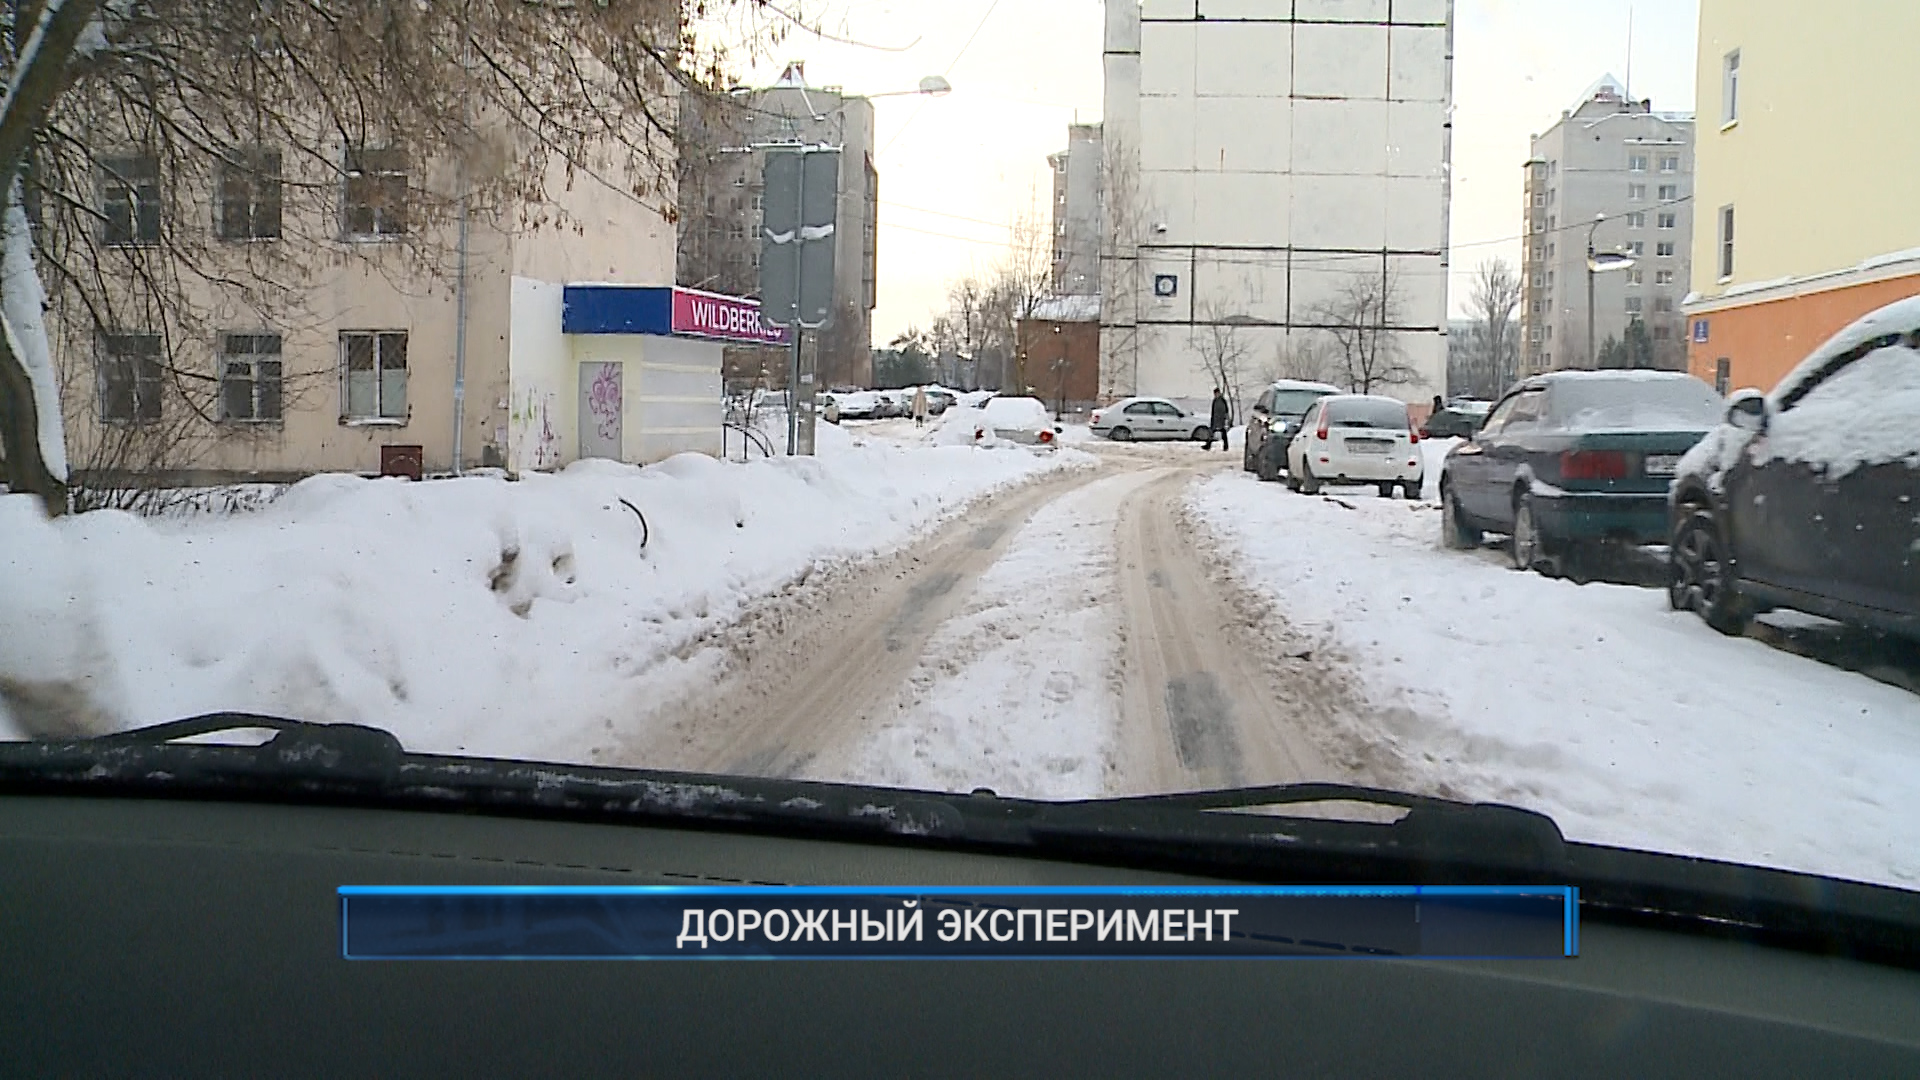 4 группа дороги. Небольшой снегопад город. Улица настоящая зимой. ДПС Рыбинск 40.